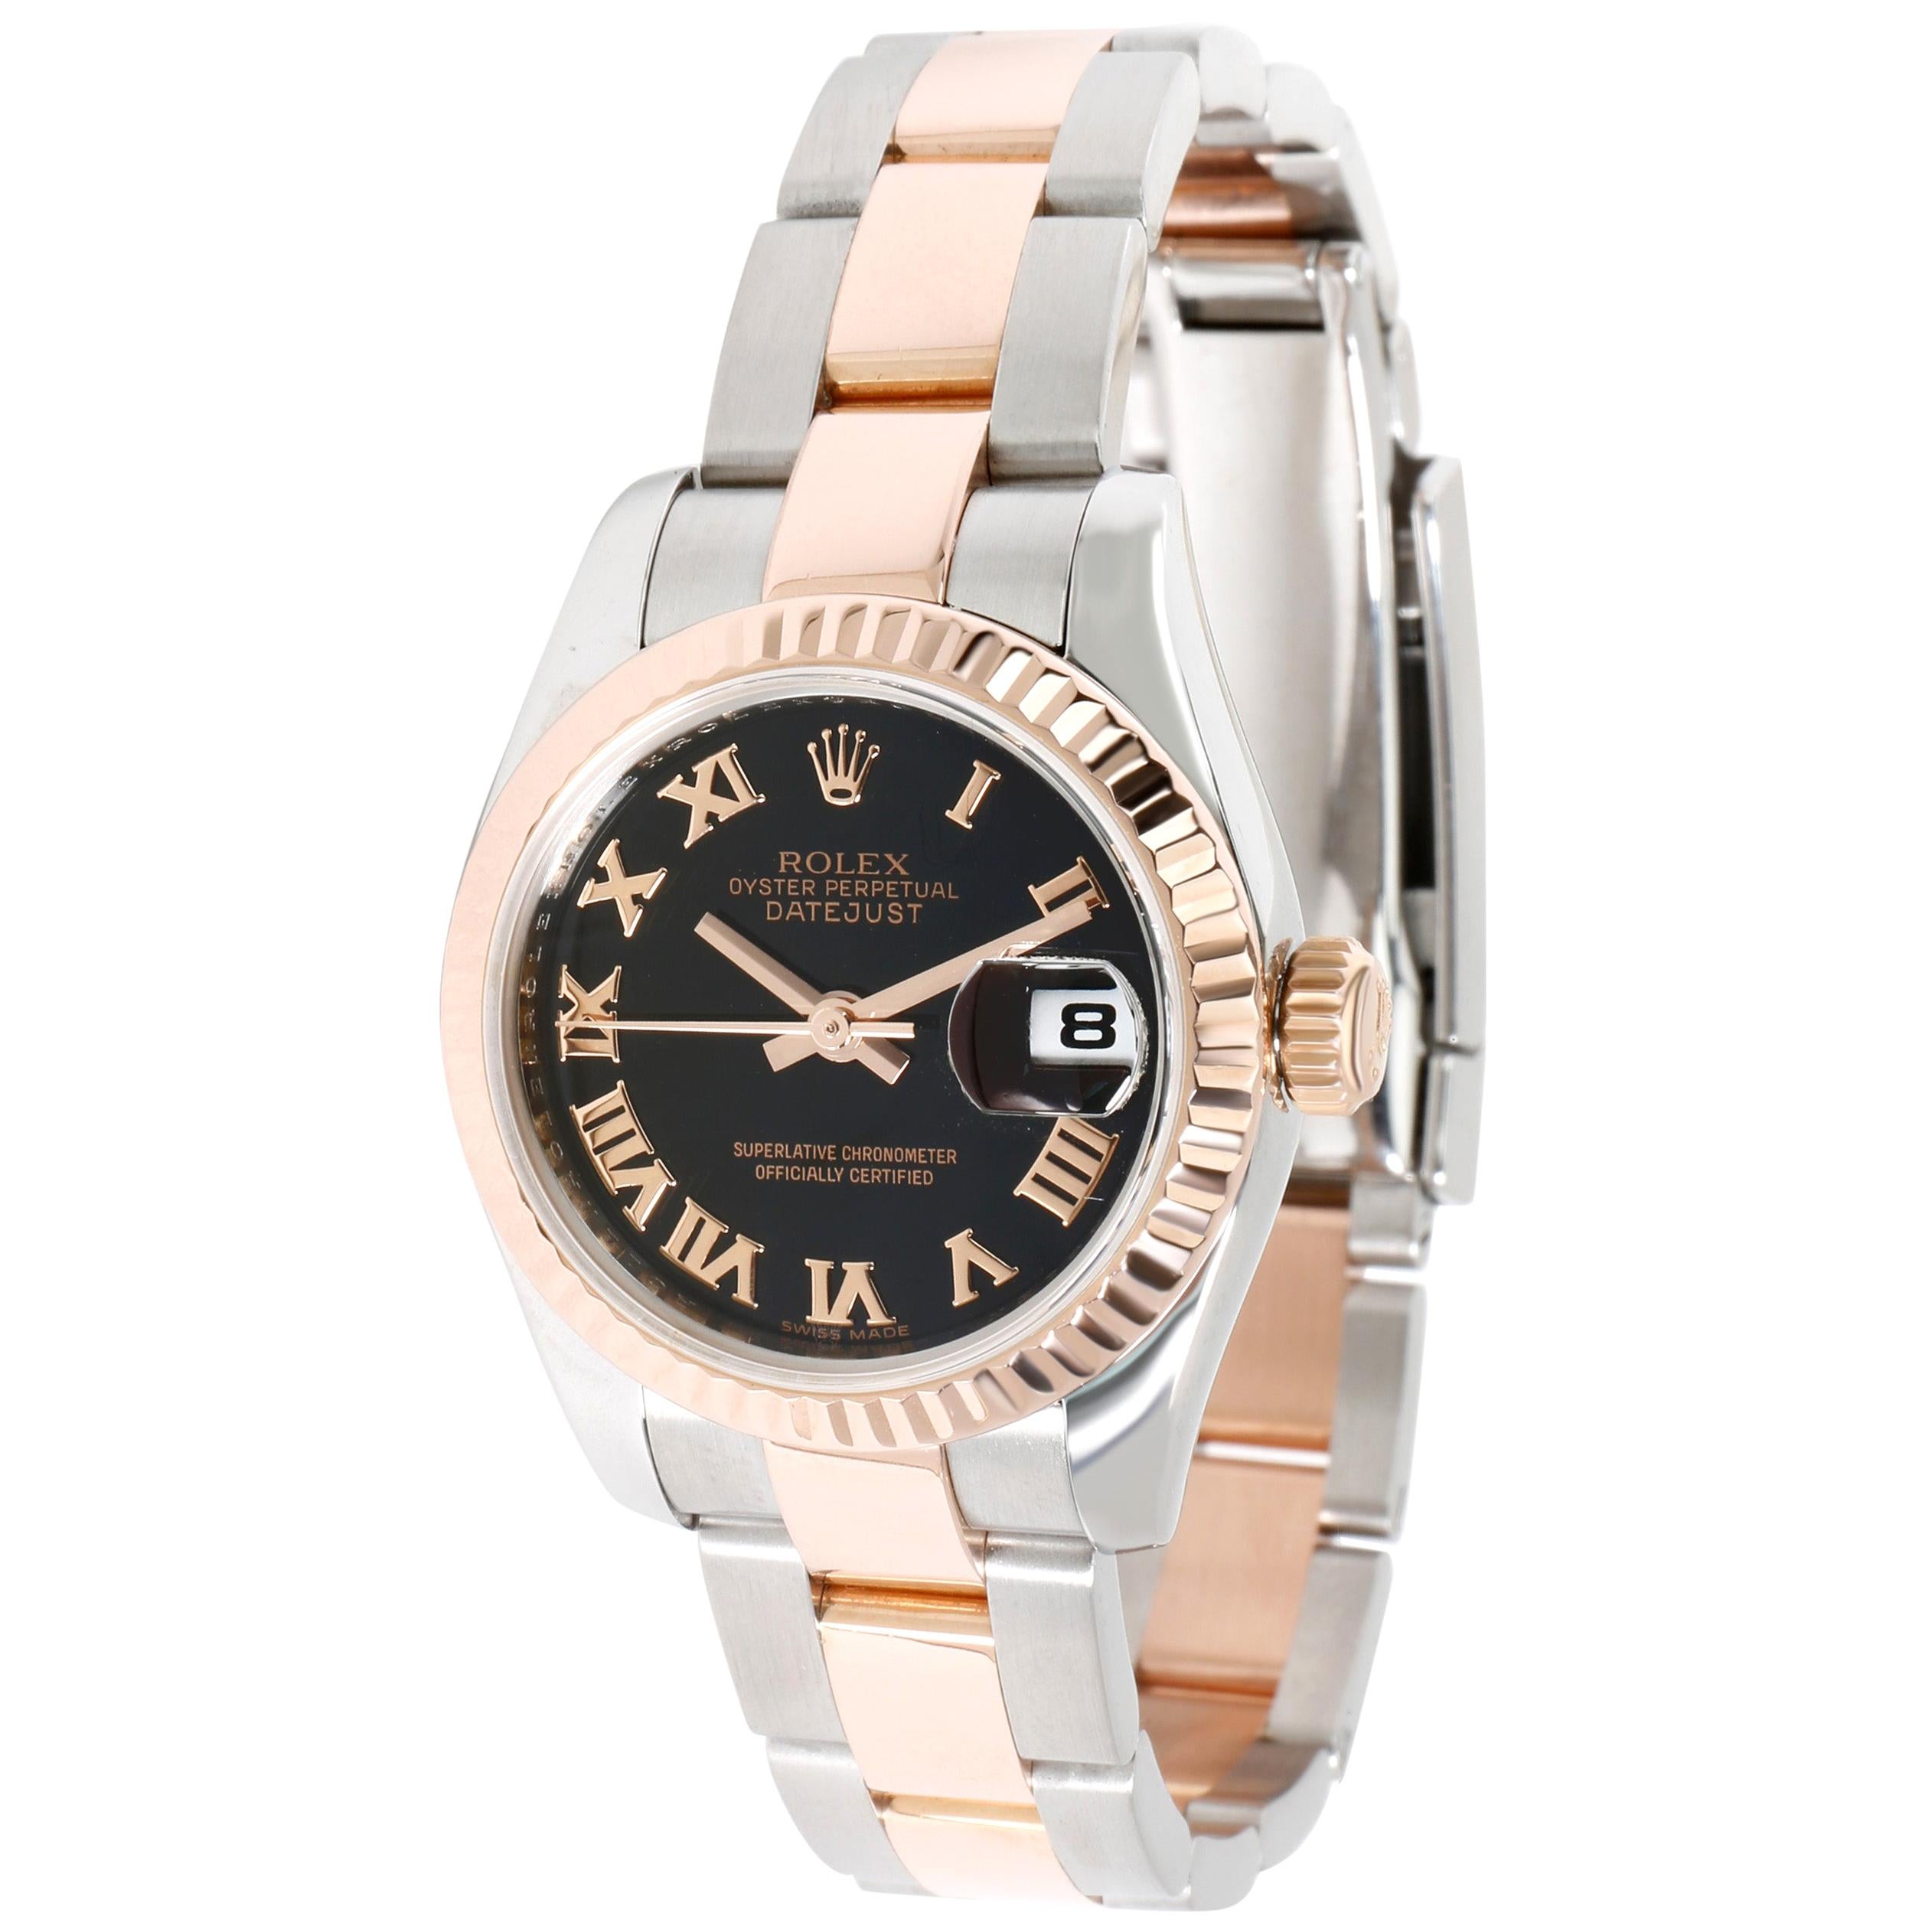 Rolex Datejust 179171 Women's Watch in 18 Karat Stainless Steel/Rose Gold